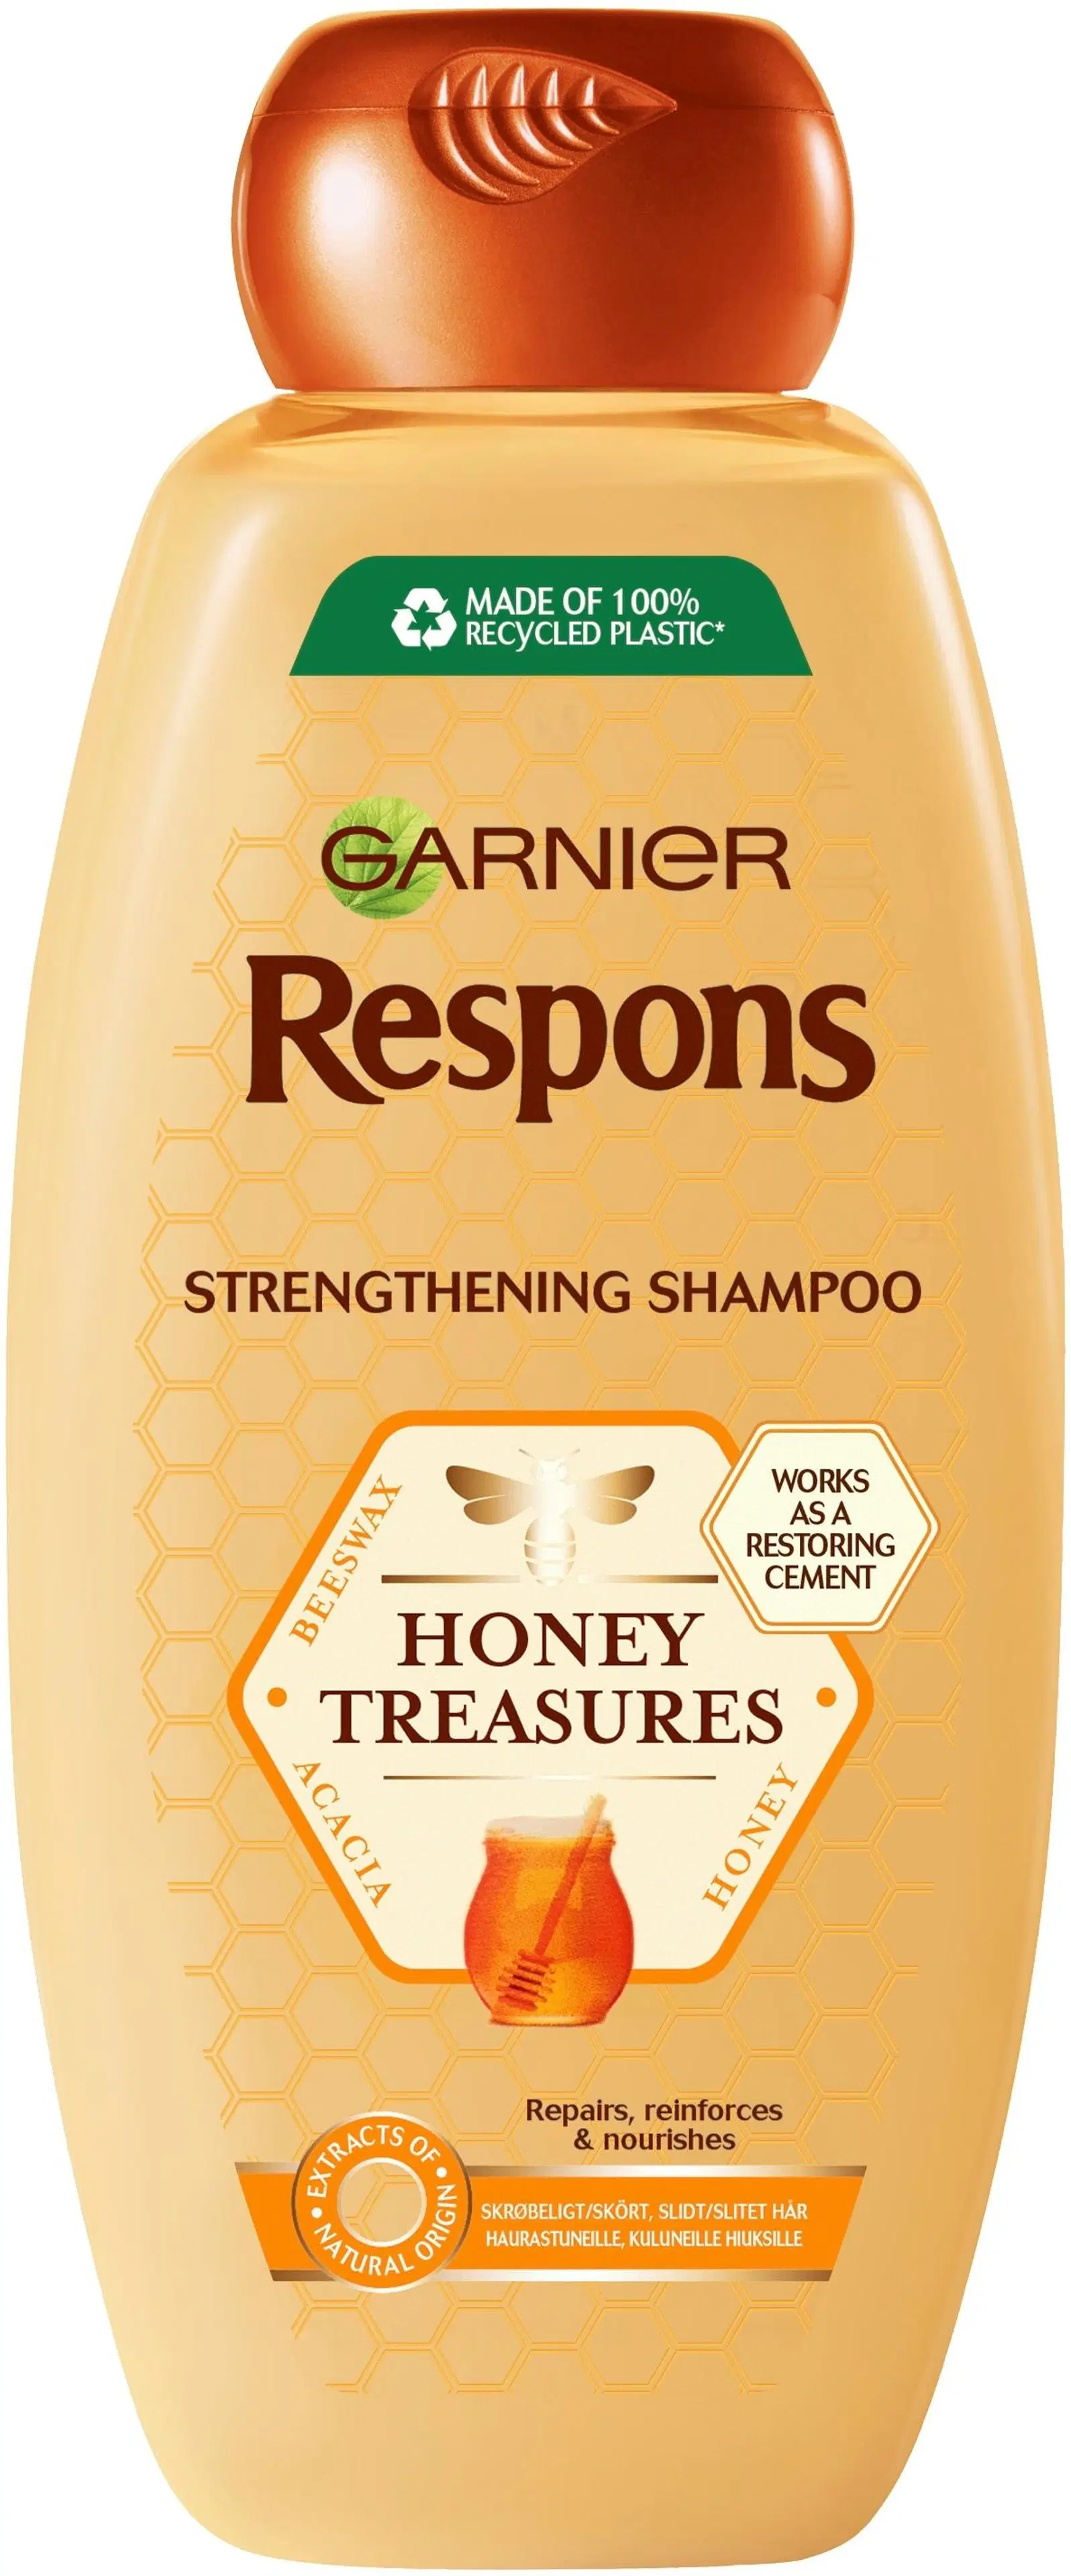 Garnier Respons Honey Treasures vahvistava shampoo heikoille ja kuluneille hiuksille 400ml